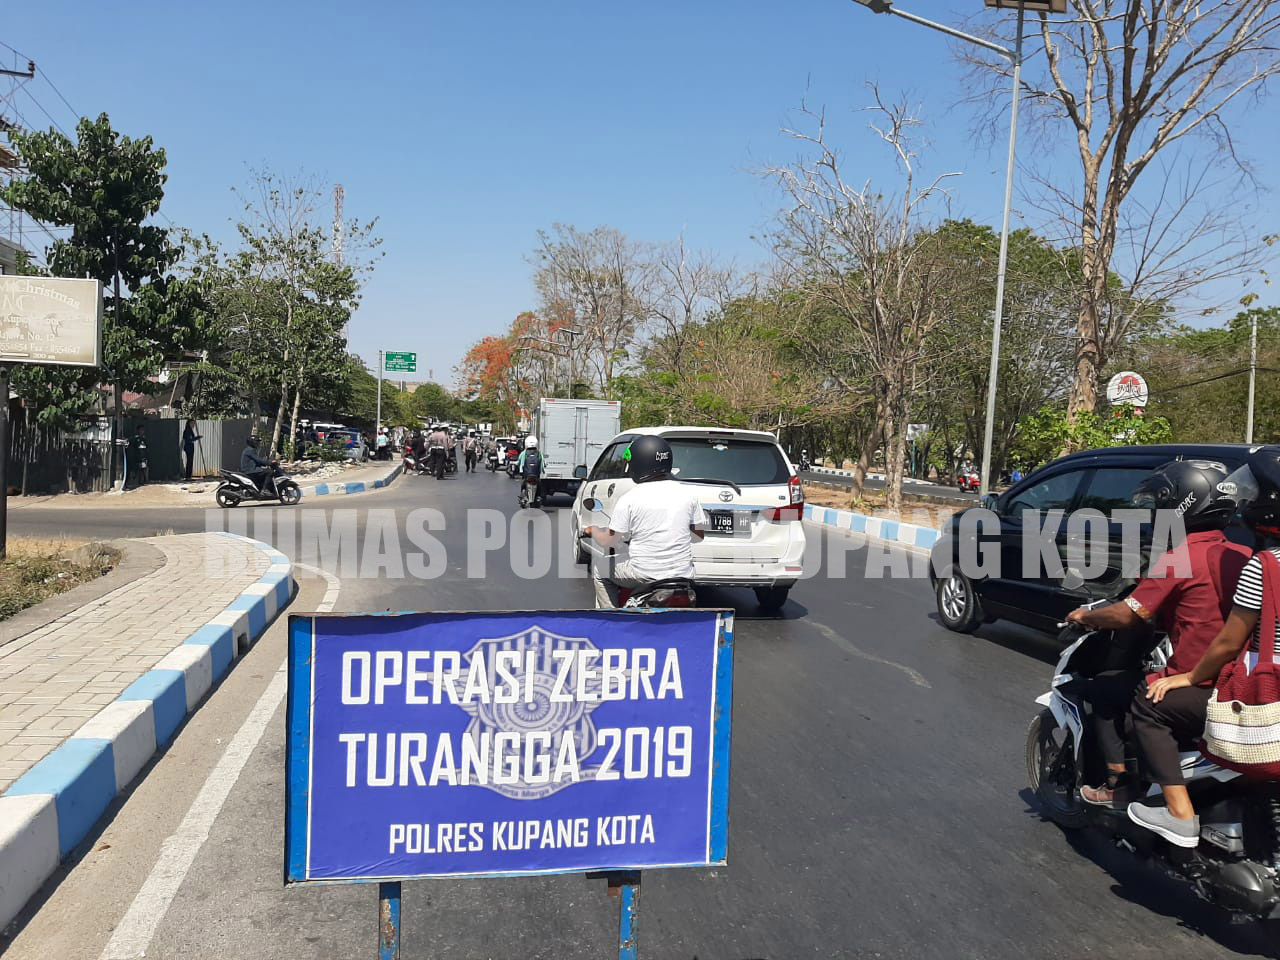 Hari Kedua Operasi Zebra Turangga 2019,Polres Kupang Kota Tilang 42 Pengendara, Ini Dominasinya.